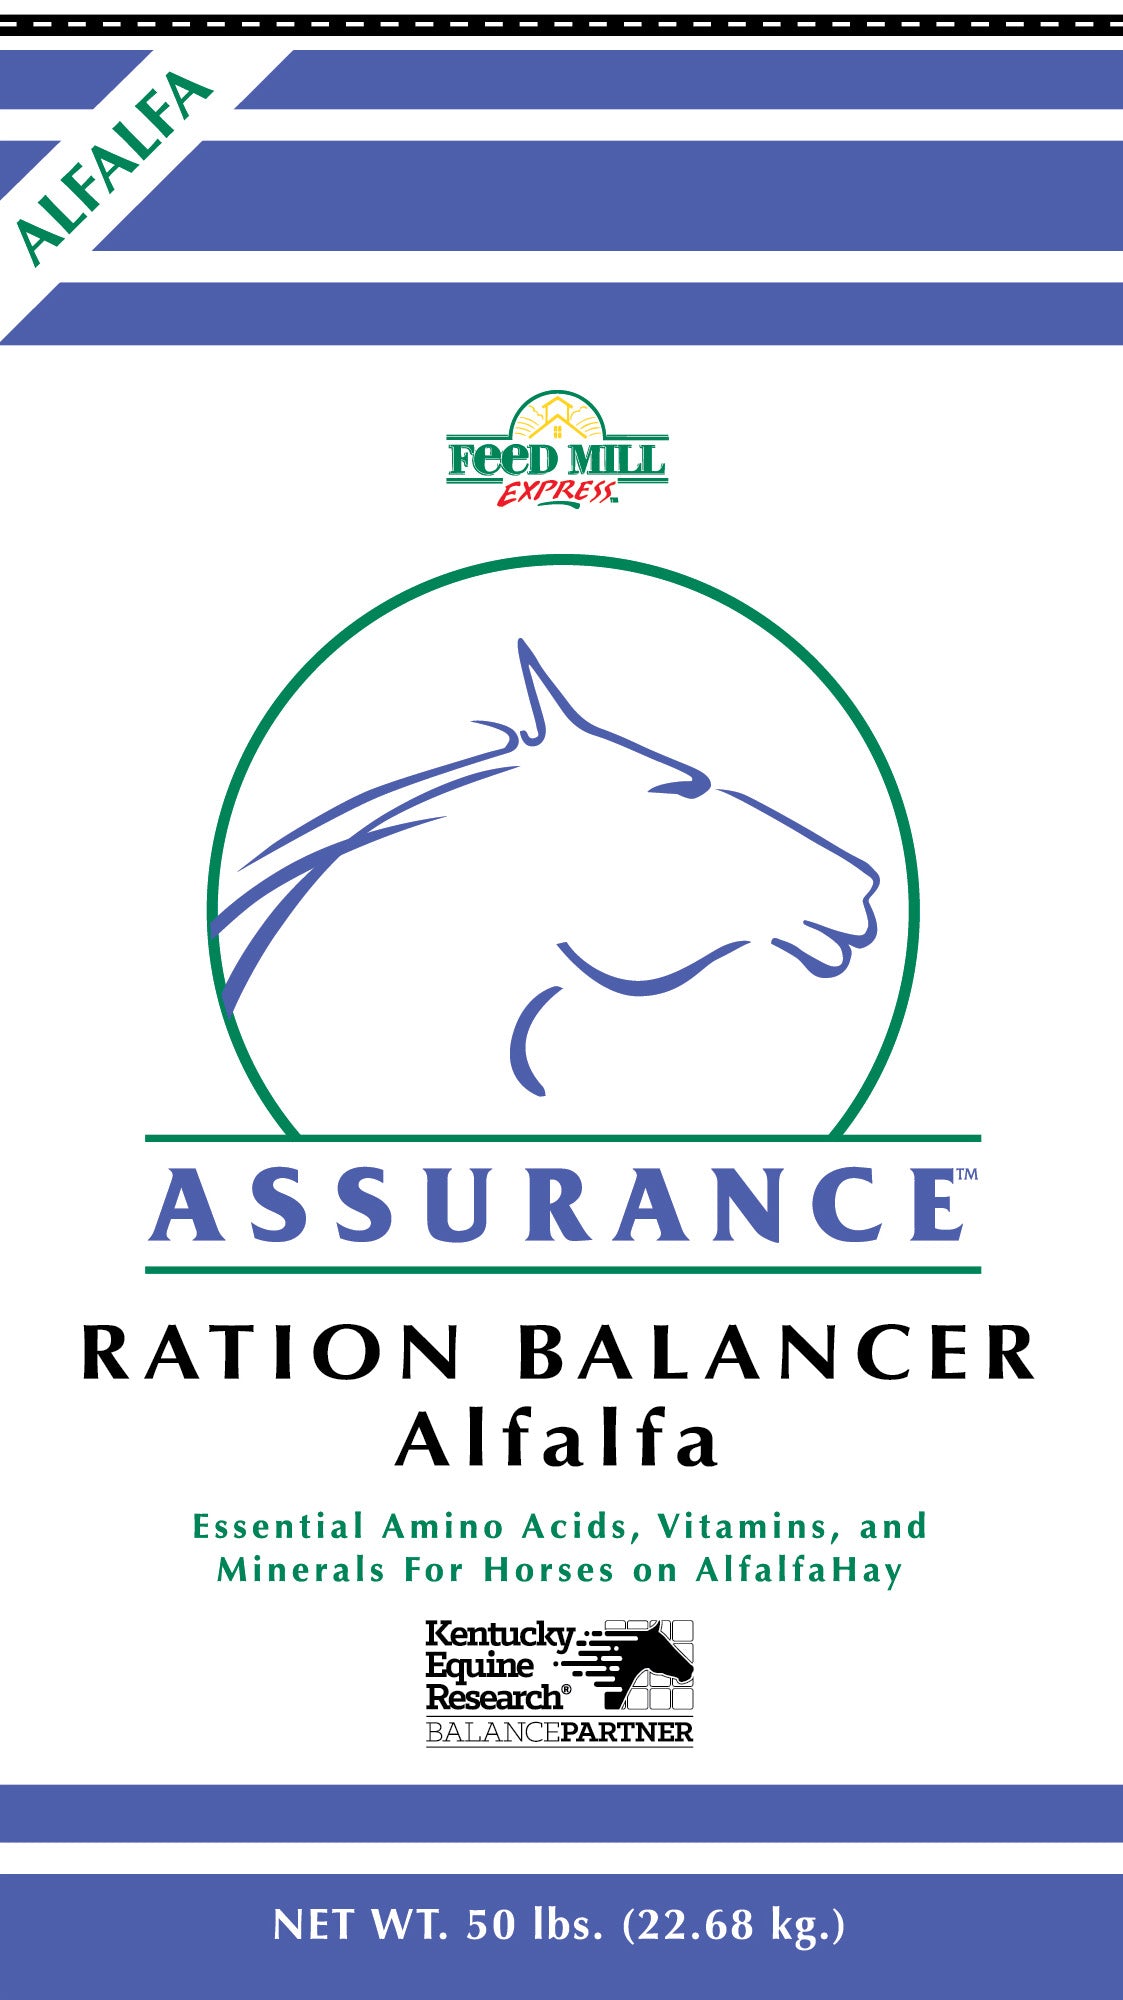 Ration Balancer Alfalfa